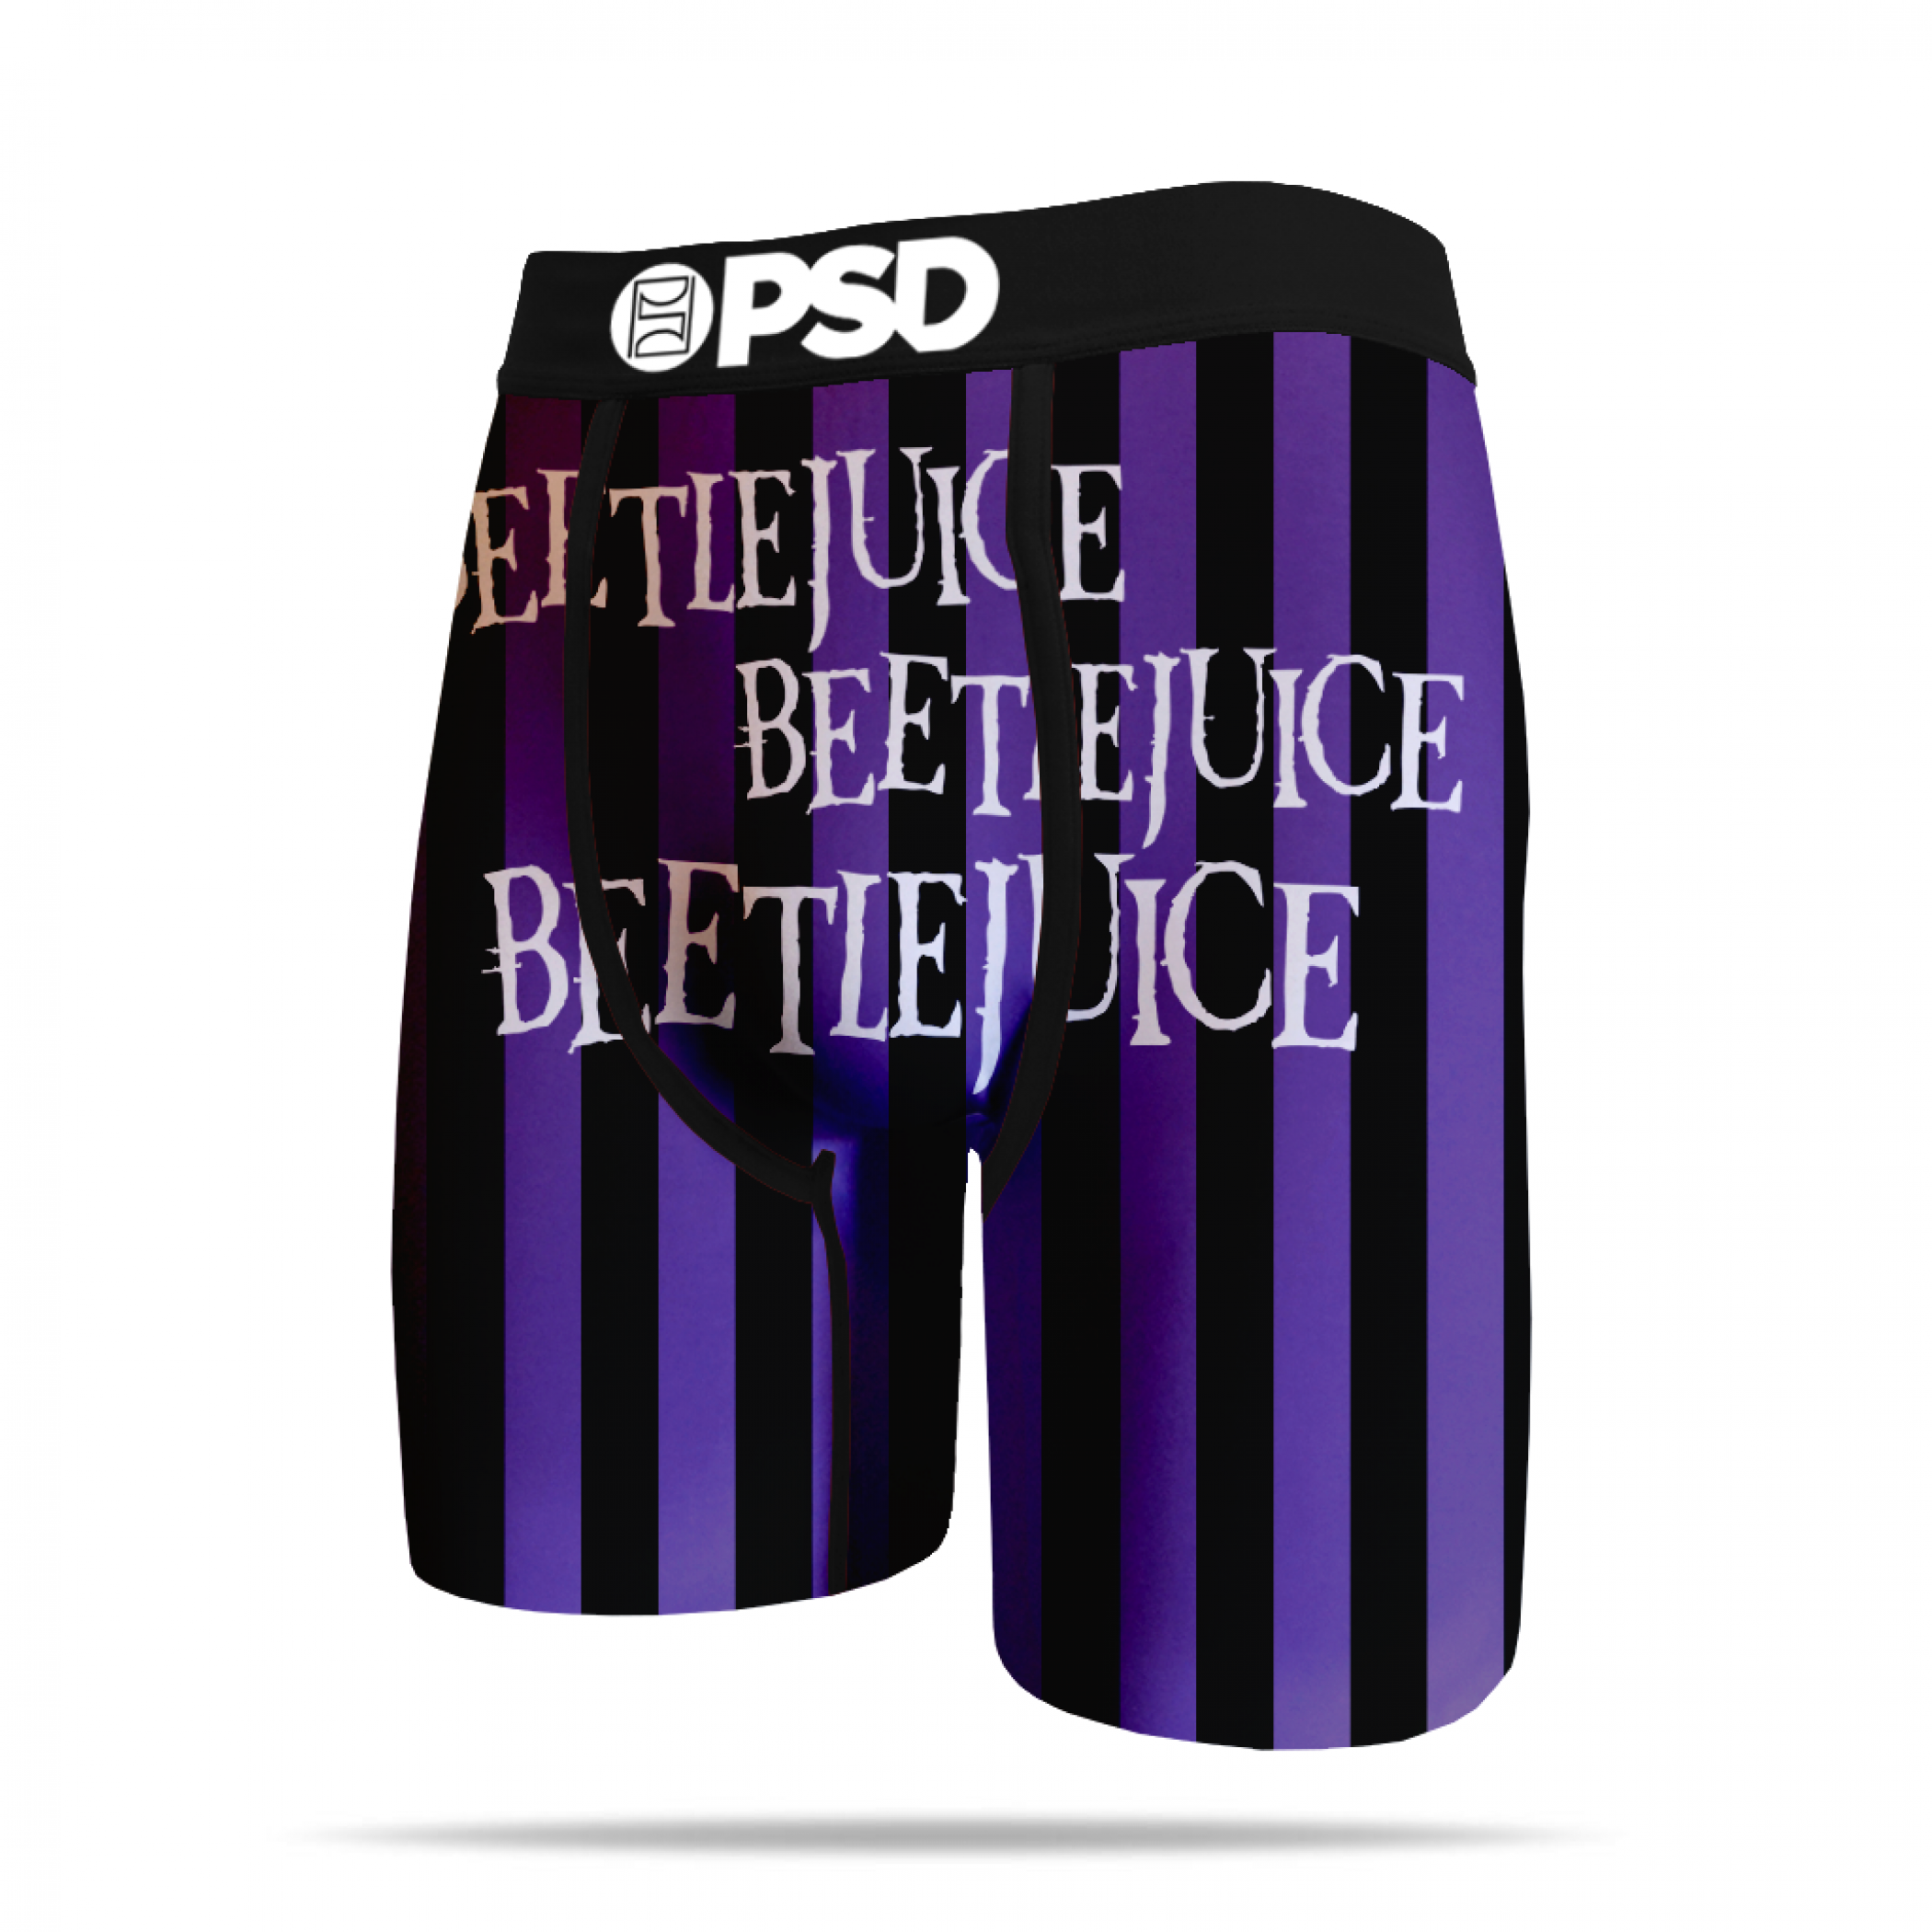 Beetlejuice X3 Boxer Briefs